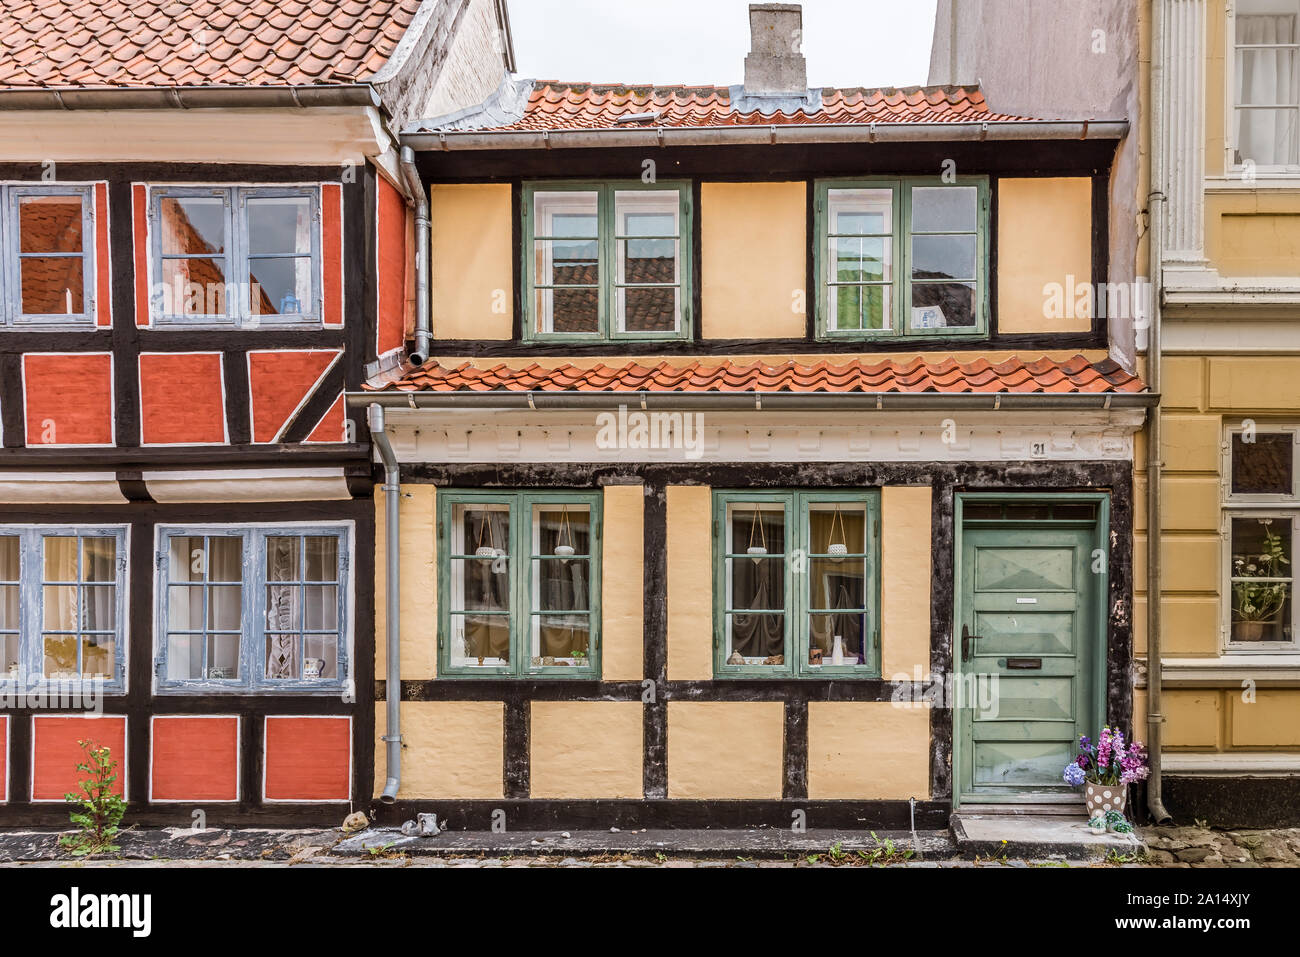 Un cadre idyllique street d'anciennes maisons à colombages dans le mariage-island Aero, le Danemark, le 13 juillet 2019 Banque D'Images